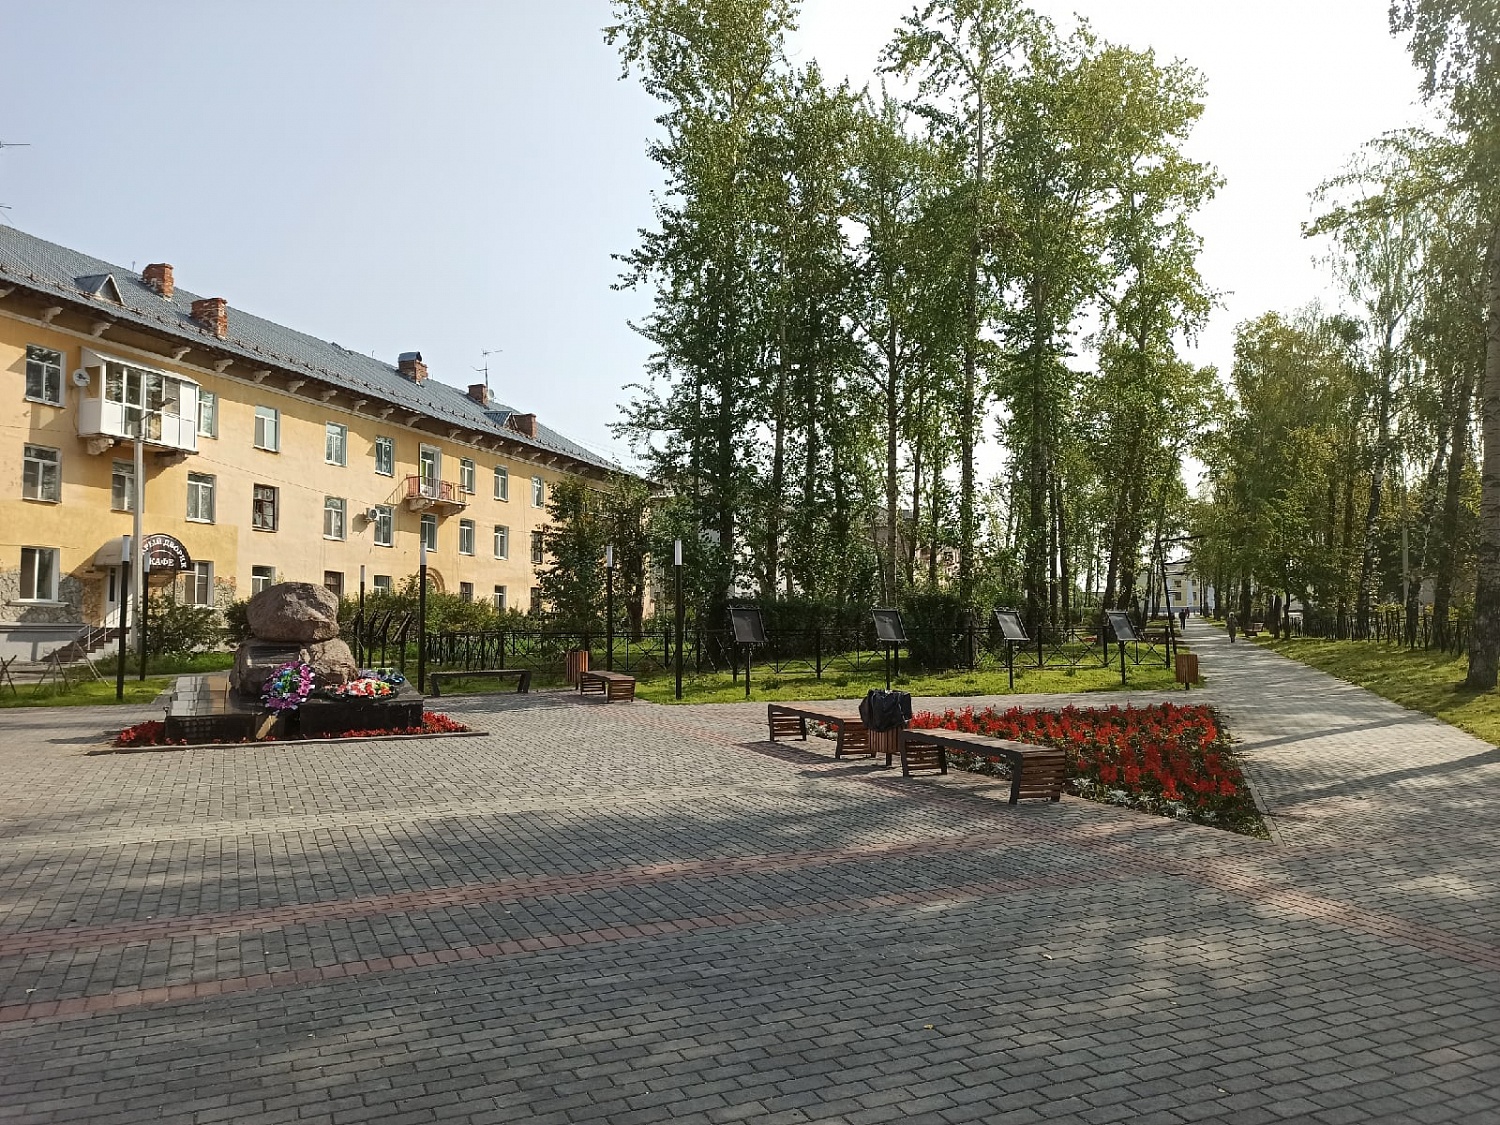 сквер по ул. Черняховского г. Соликамск, Пермский край (2020 год)